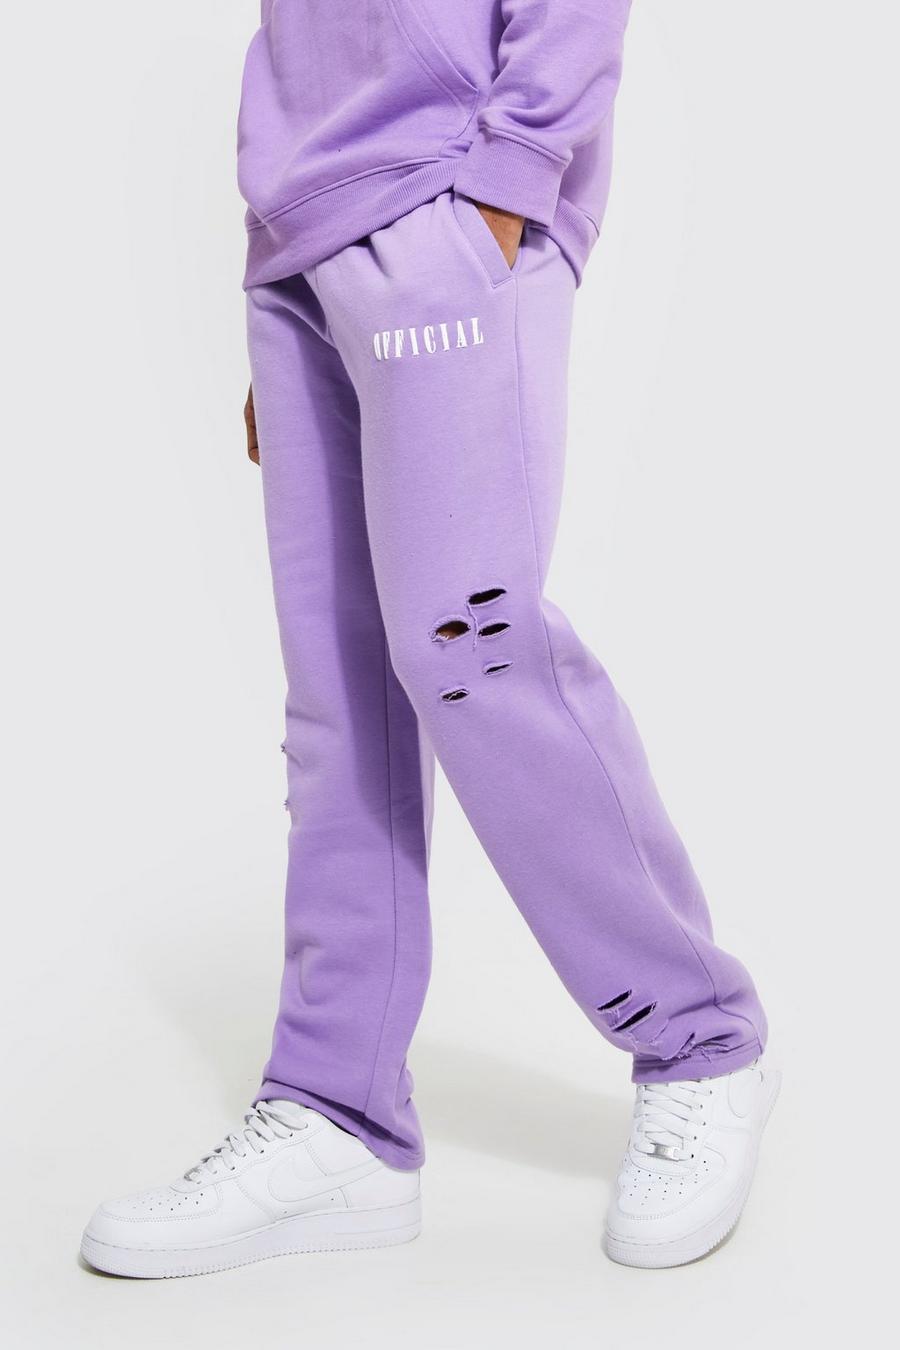 Zerrissene Oversize Official Jogginghose mit weitem Bein, Lilac violet image number 1